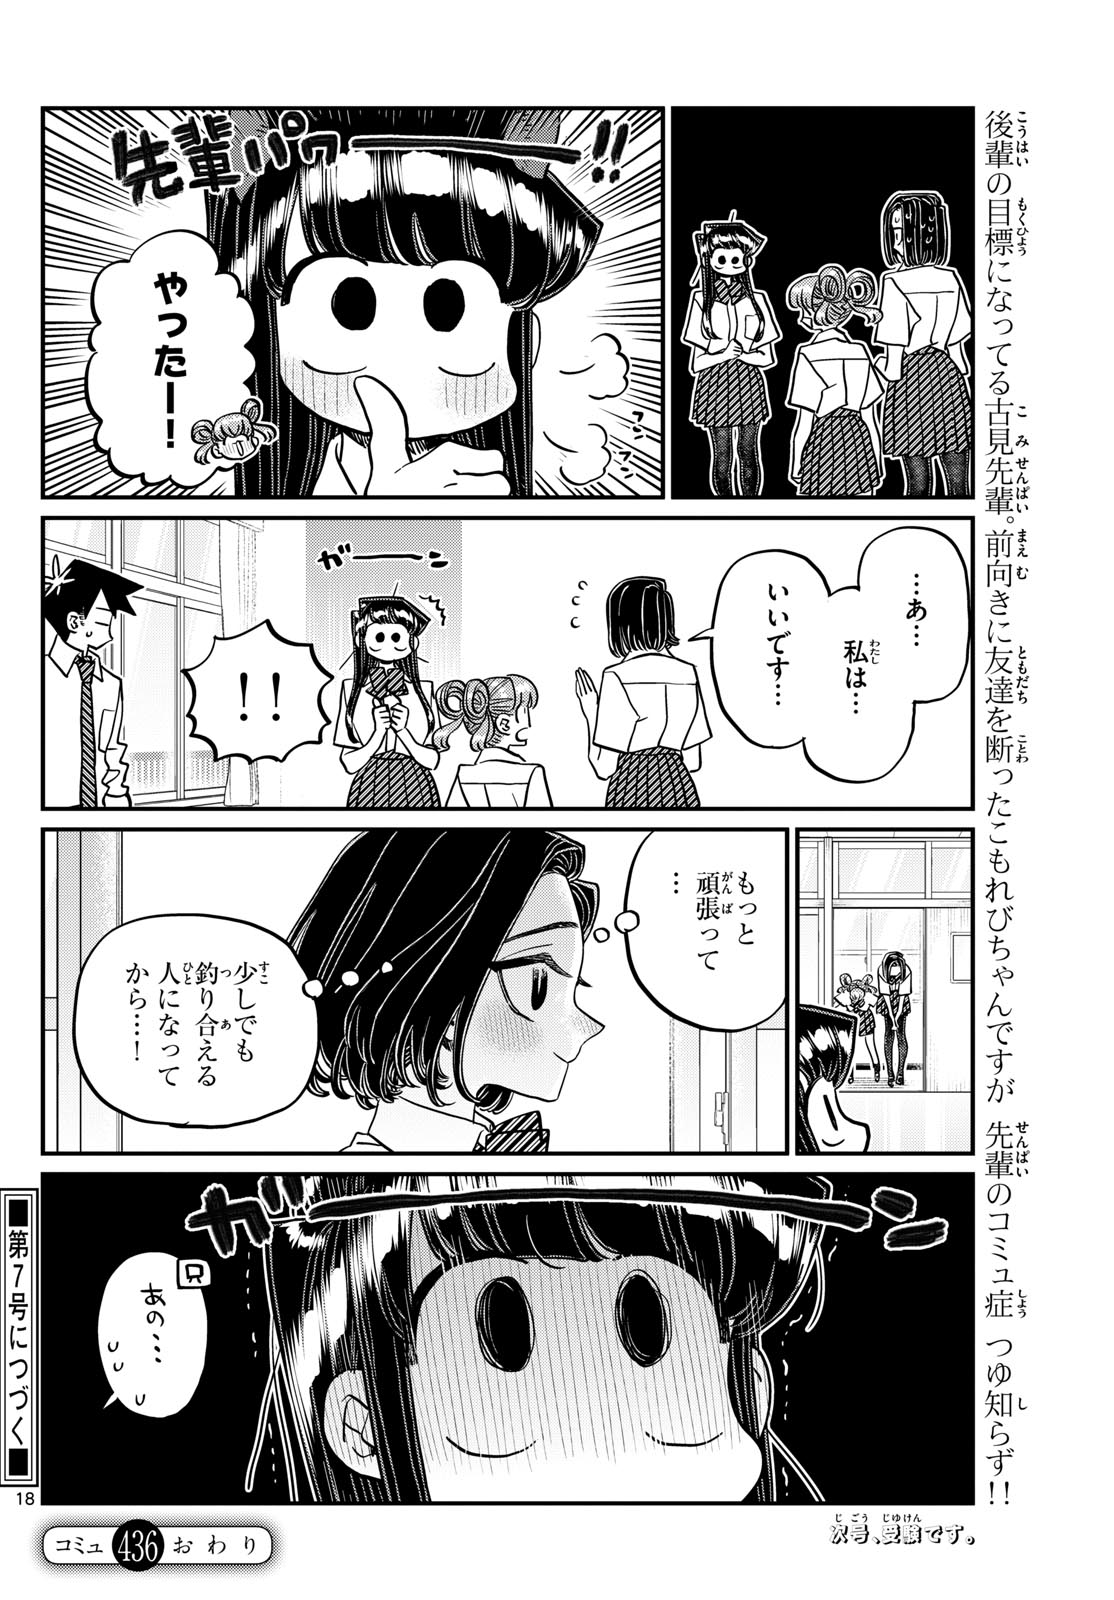 Komi-san wa Komyushou Desu - Chapter 436 - Page 18